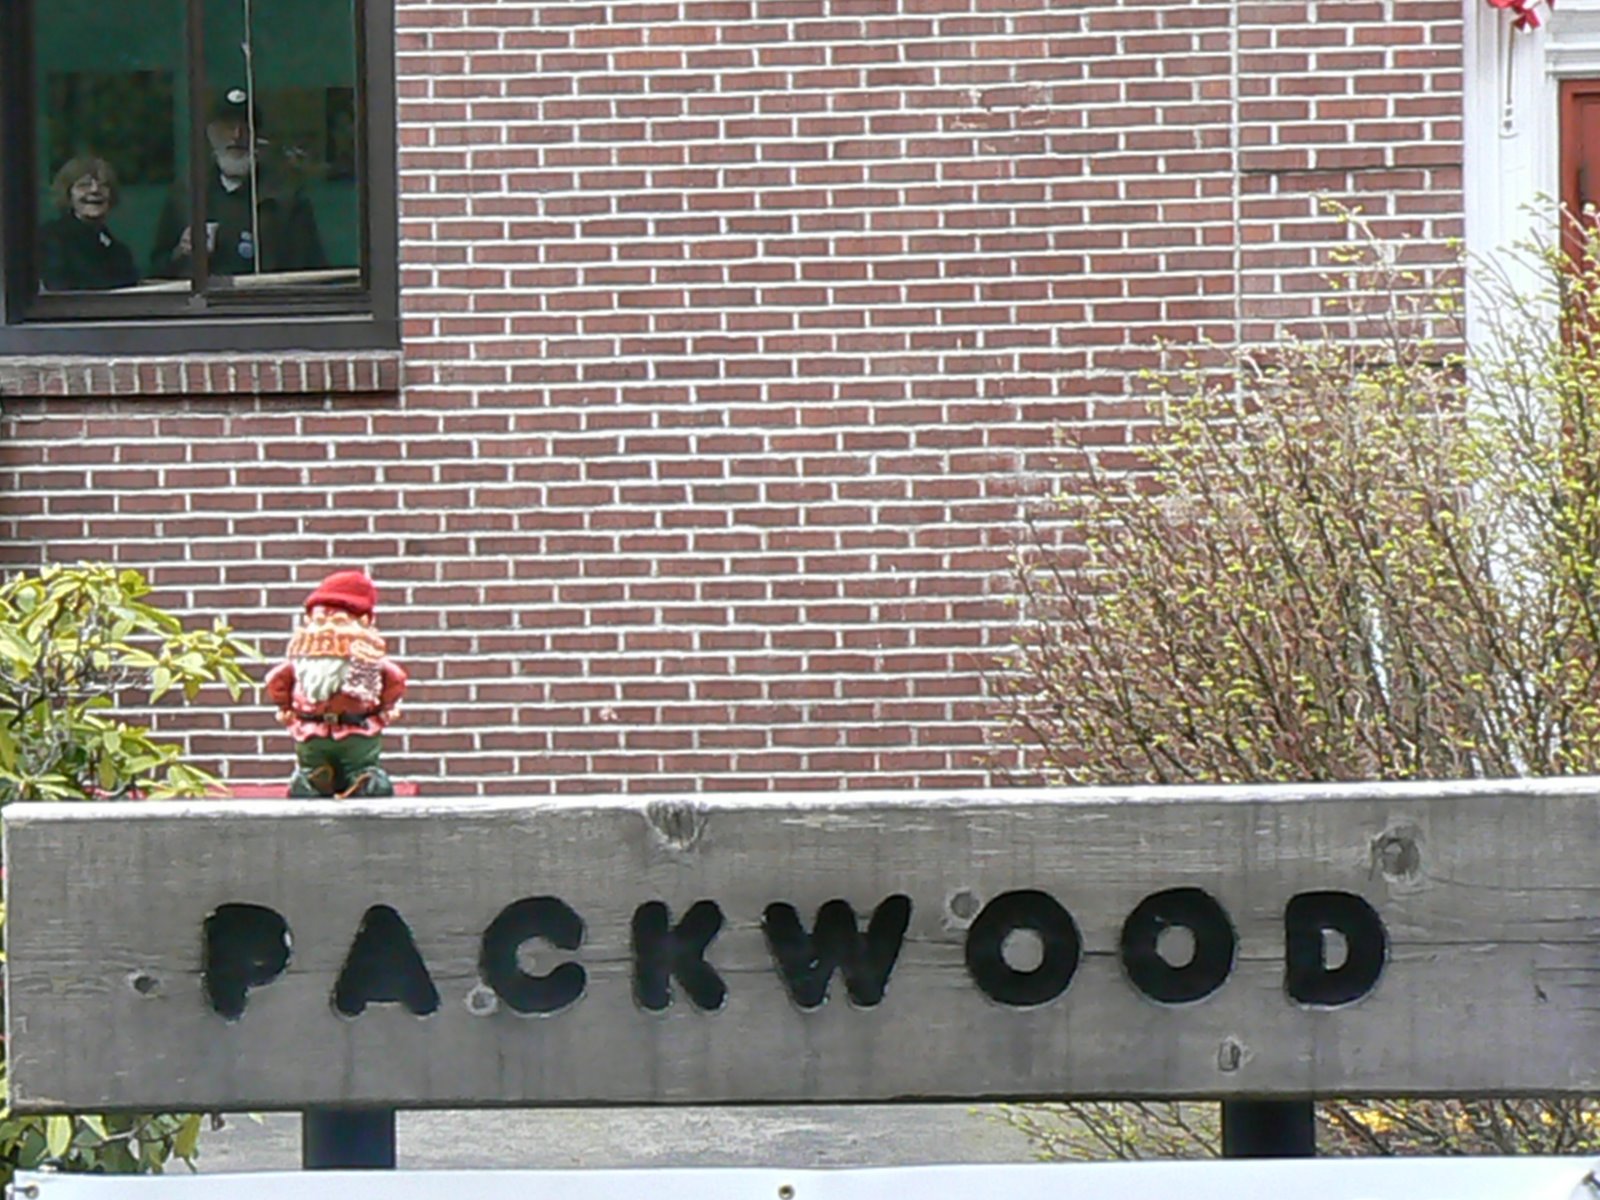 [Packwood+2008+053.jpg]